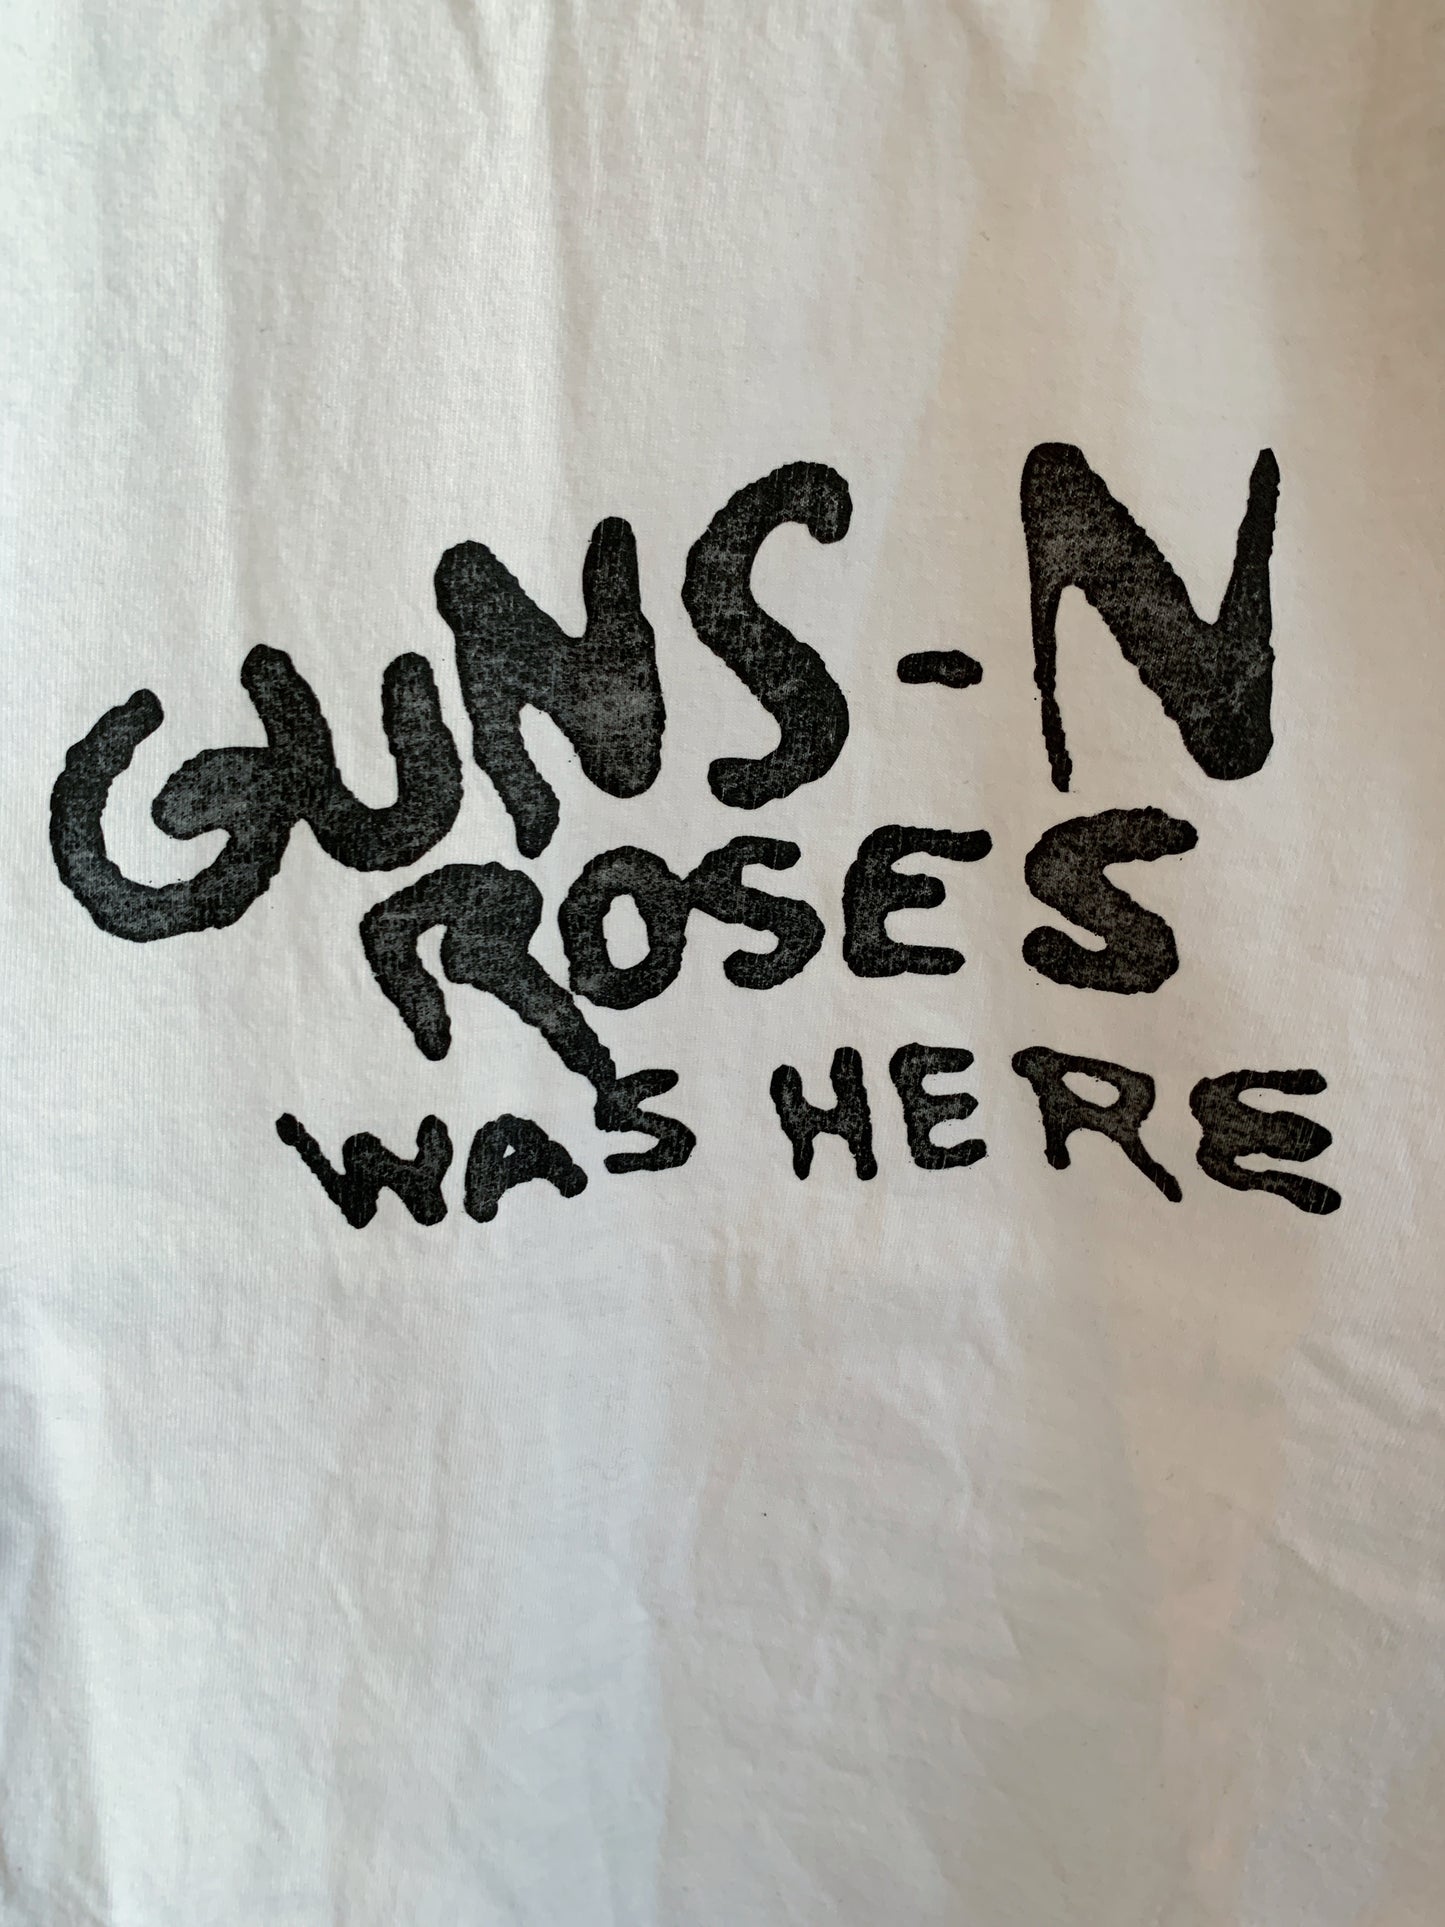 Ｇuns N’ roses baseball T-shirts